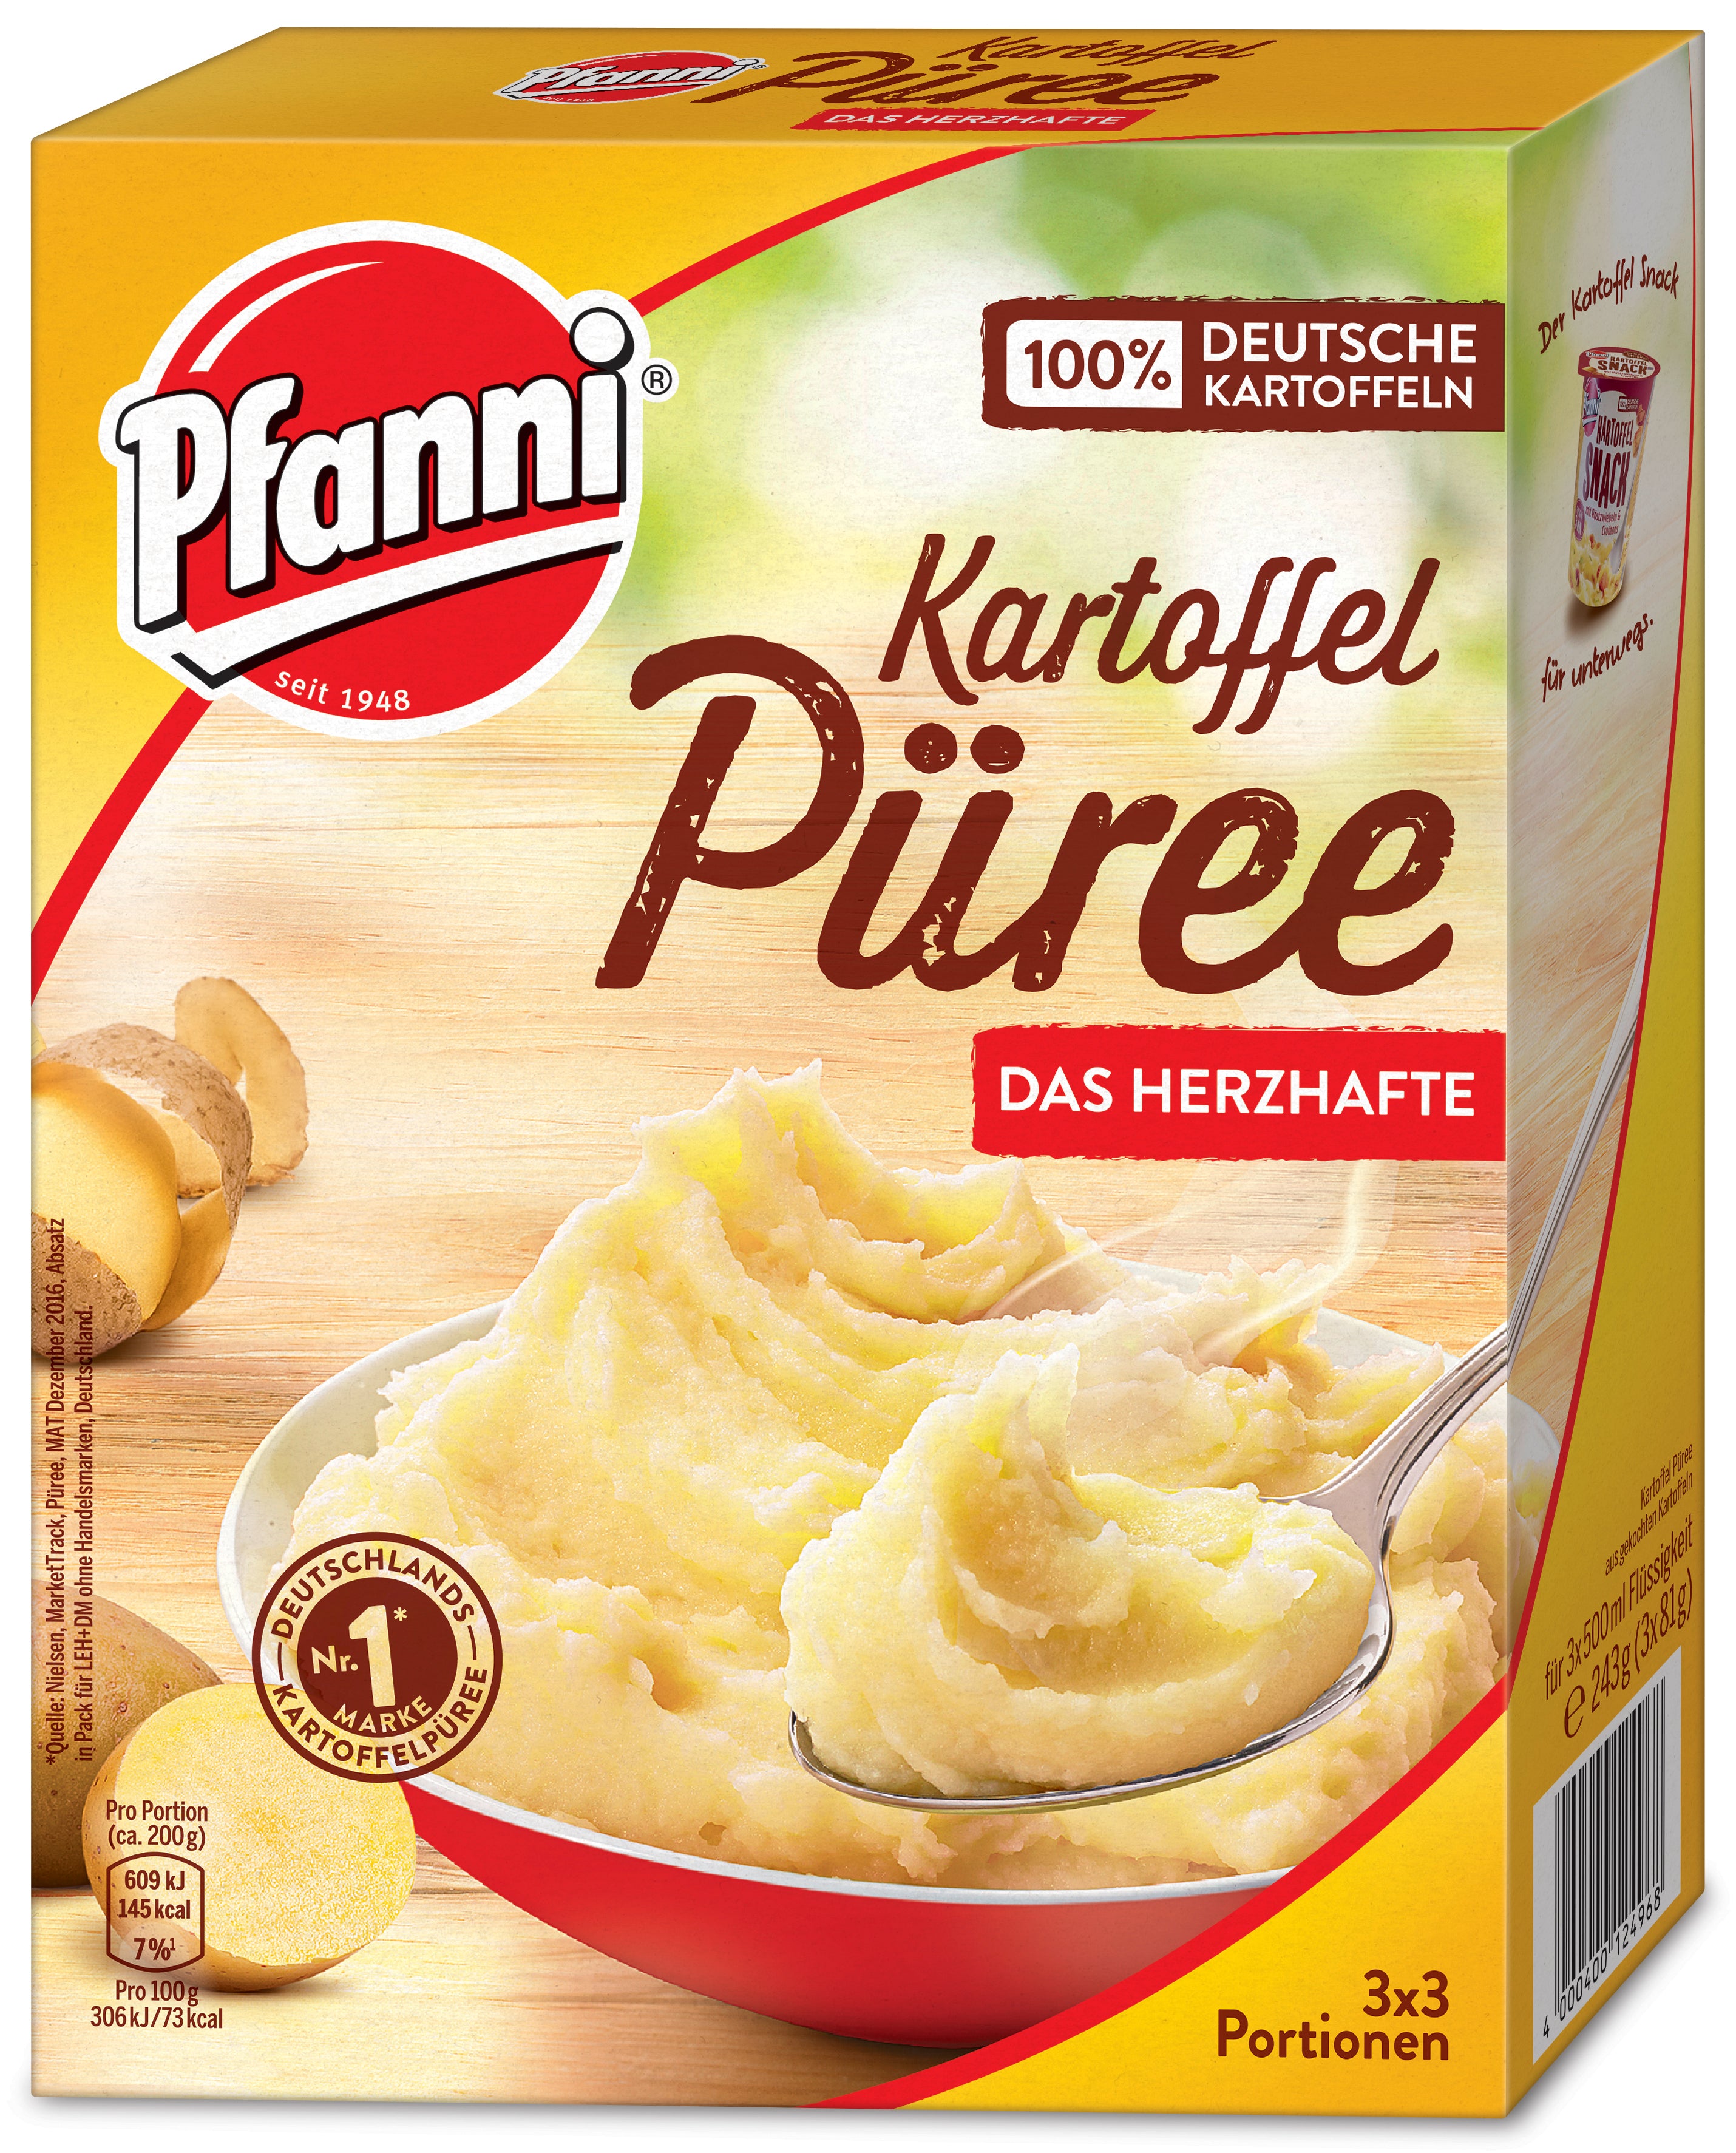 Pfanni Kartoffel Püree Das Herzhafte 243 g Packung